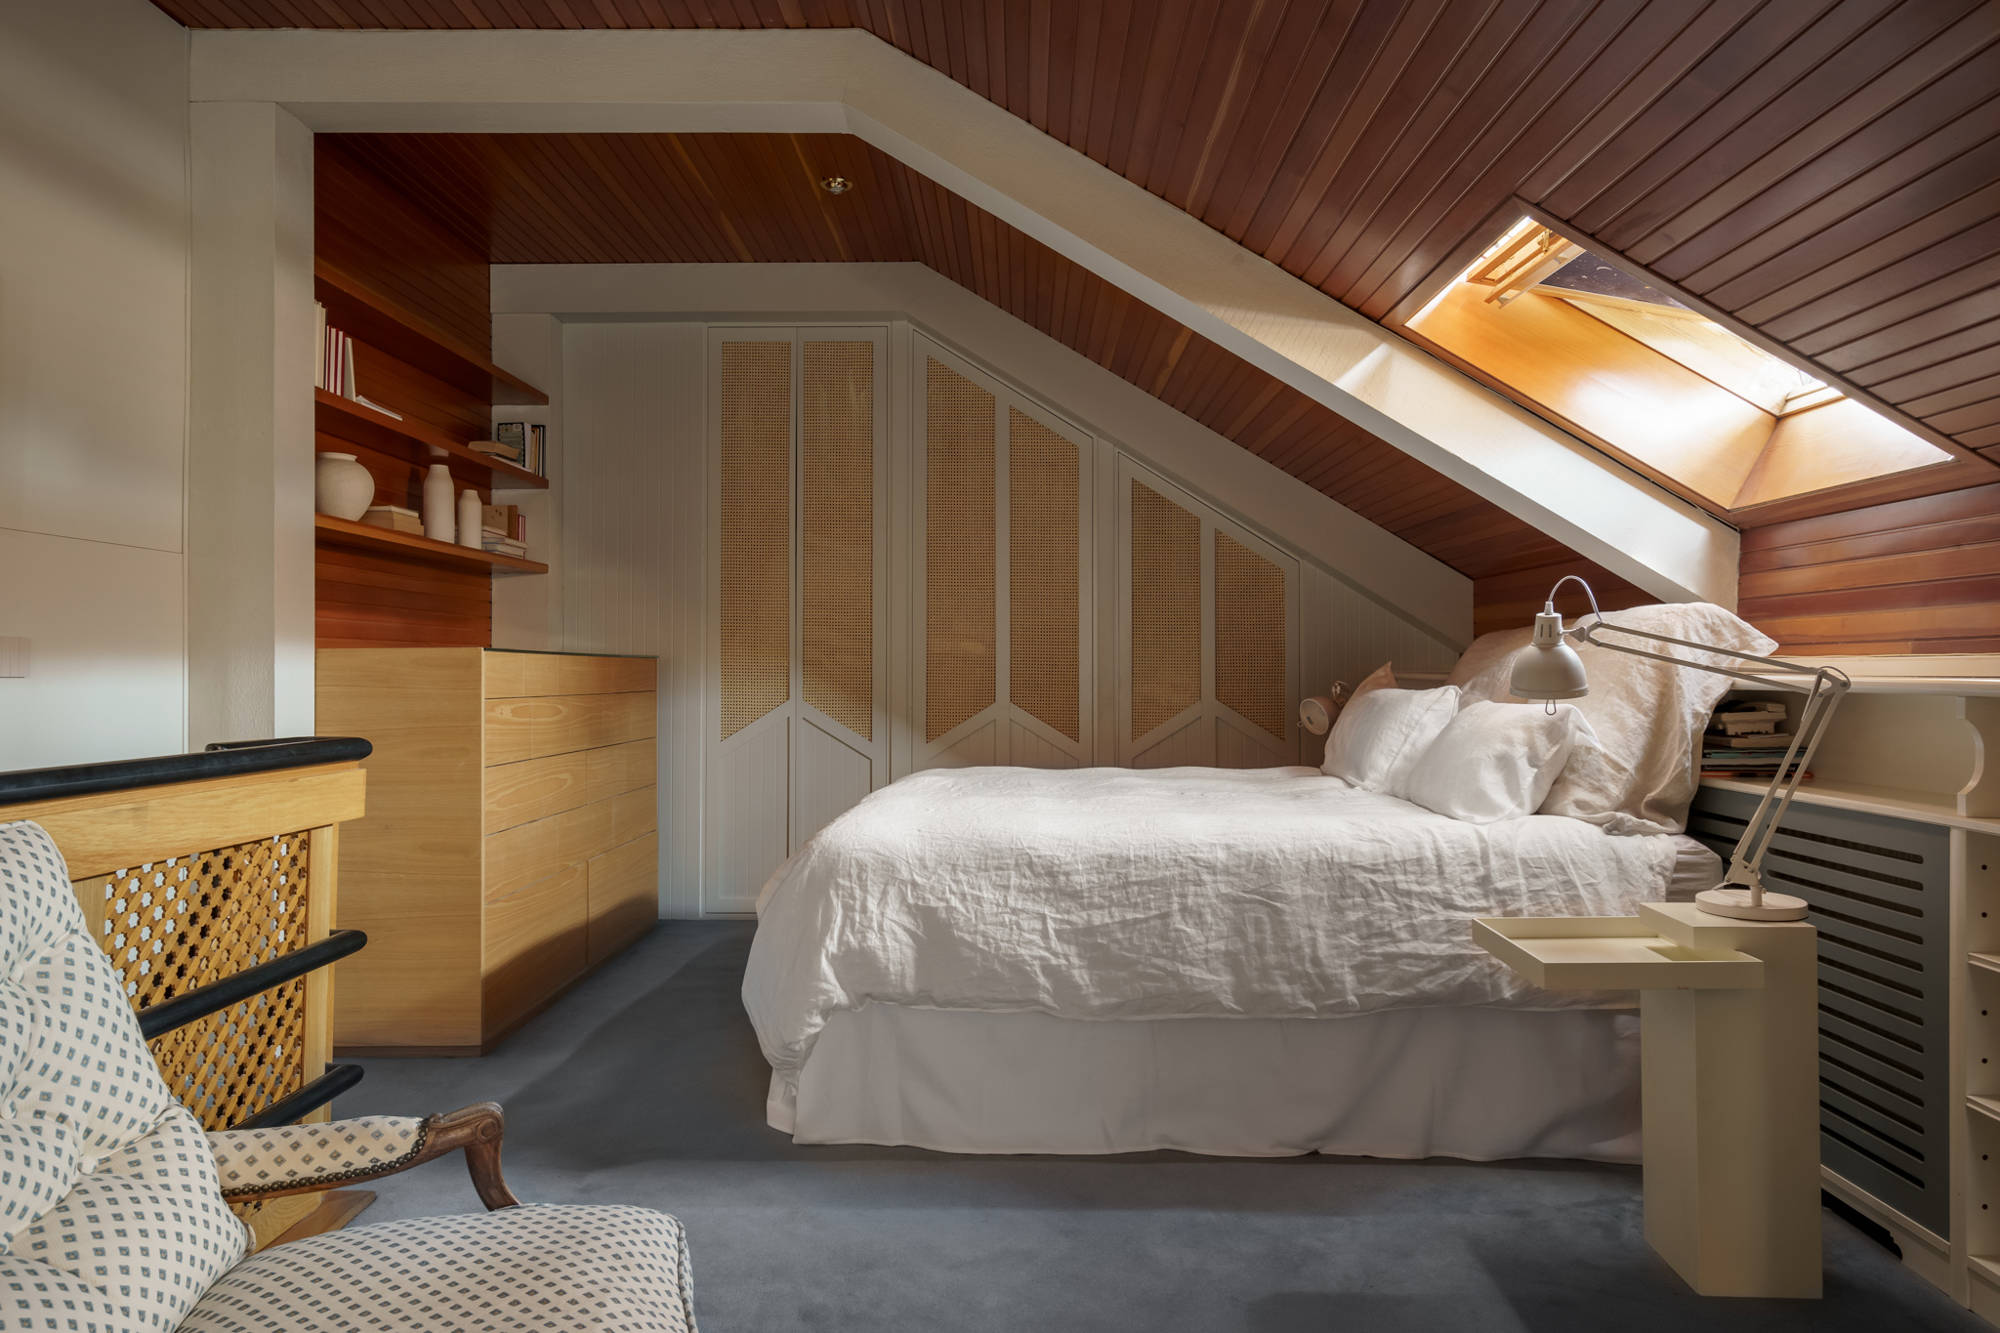 Dormitorio abuhardillado con armario empotrado realizado a medida, moqueta azul y cómoda de madera.